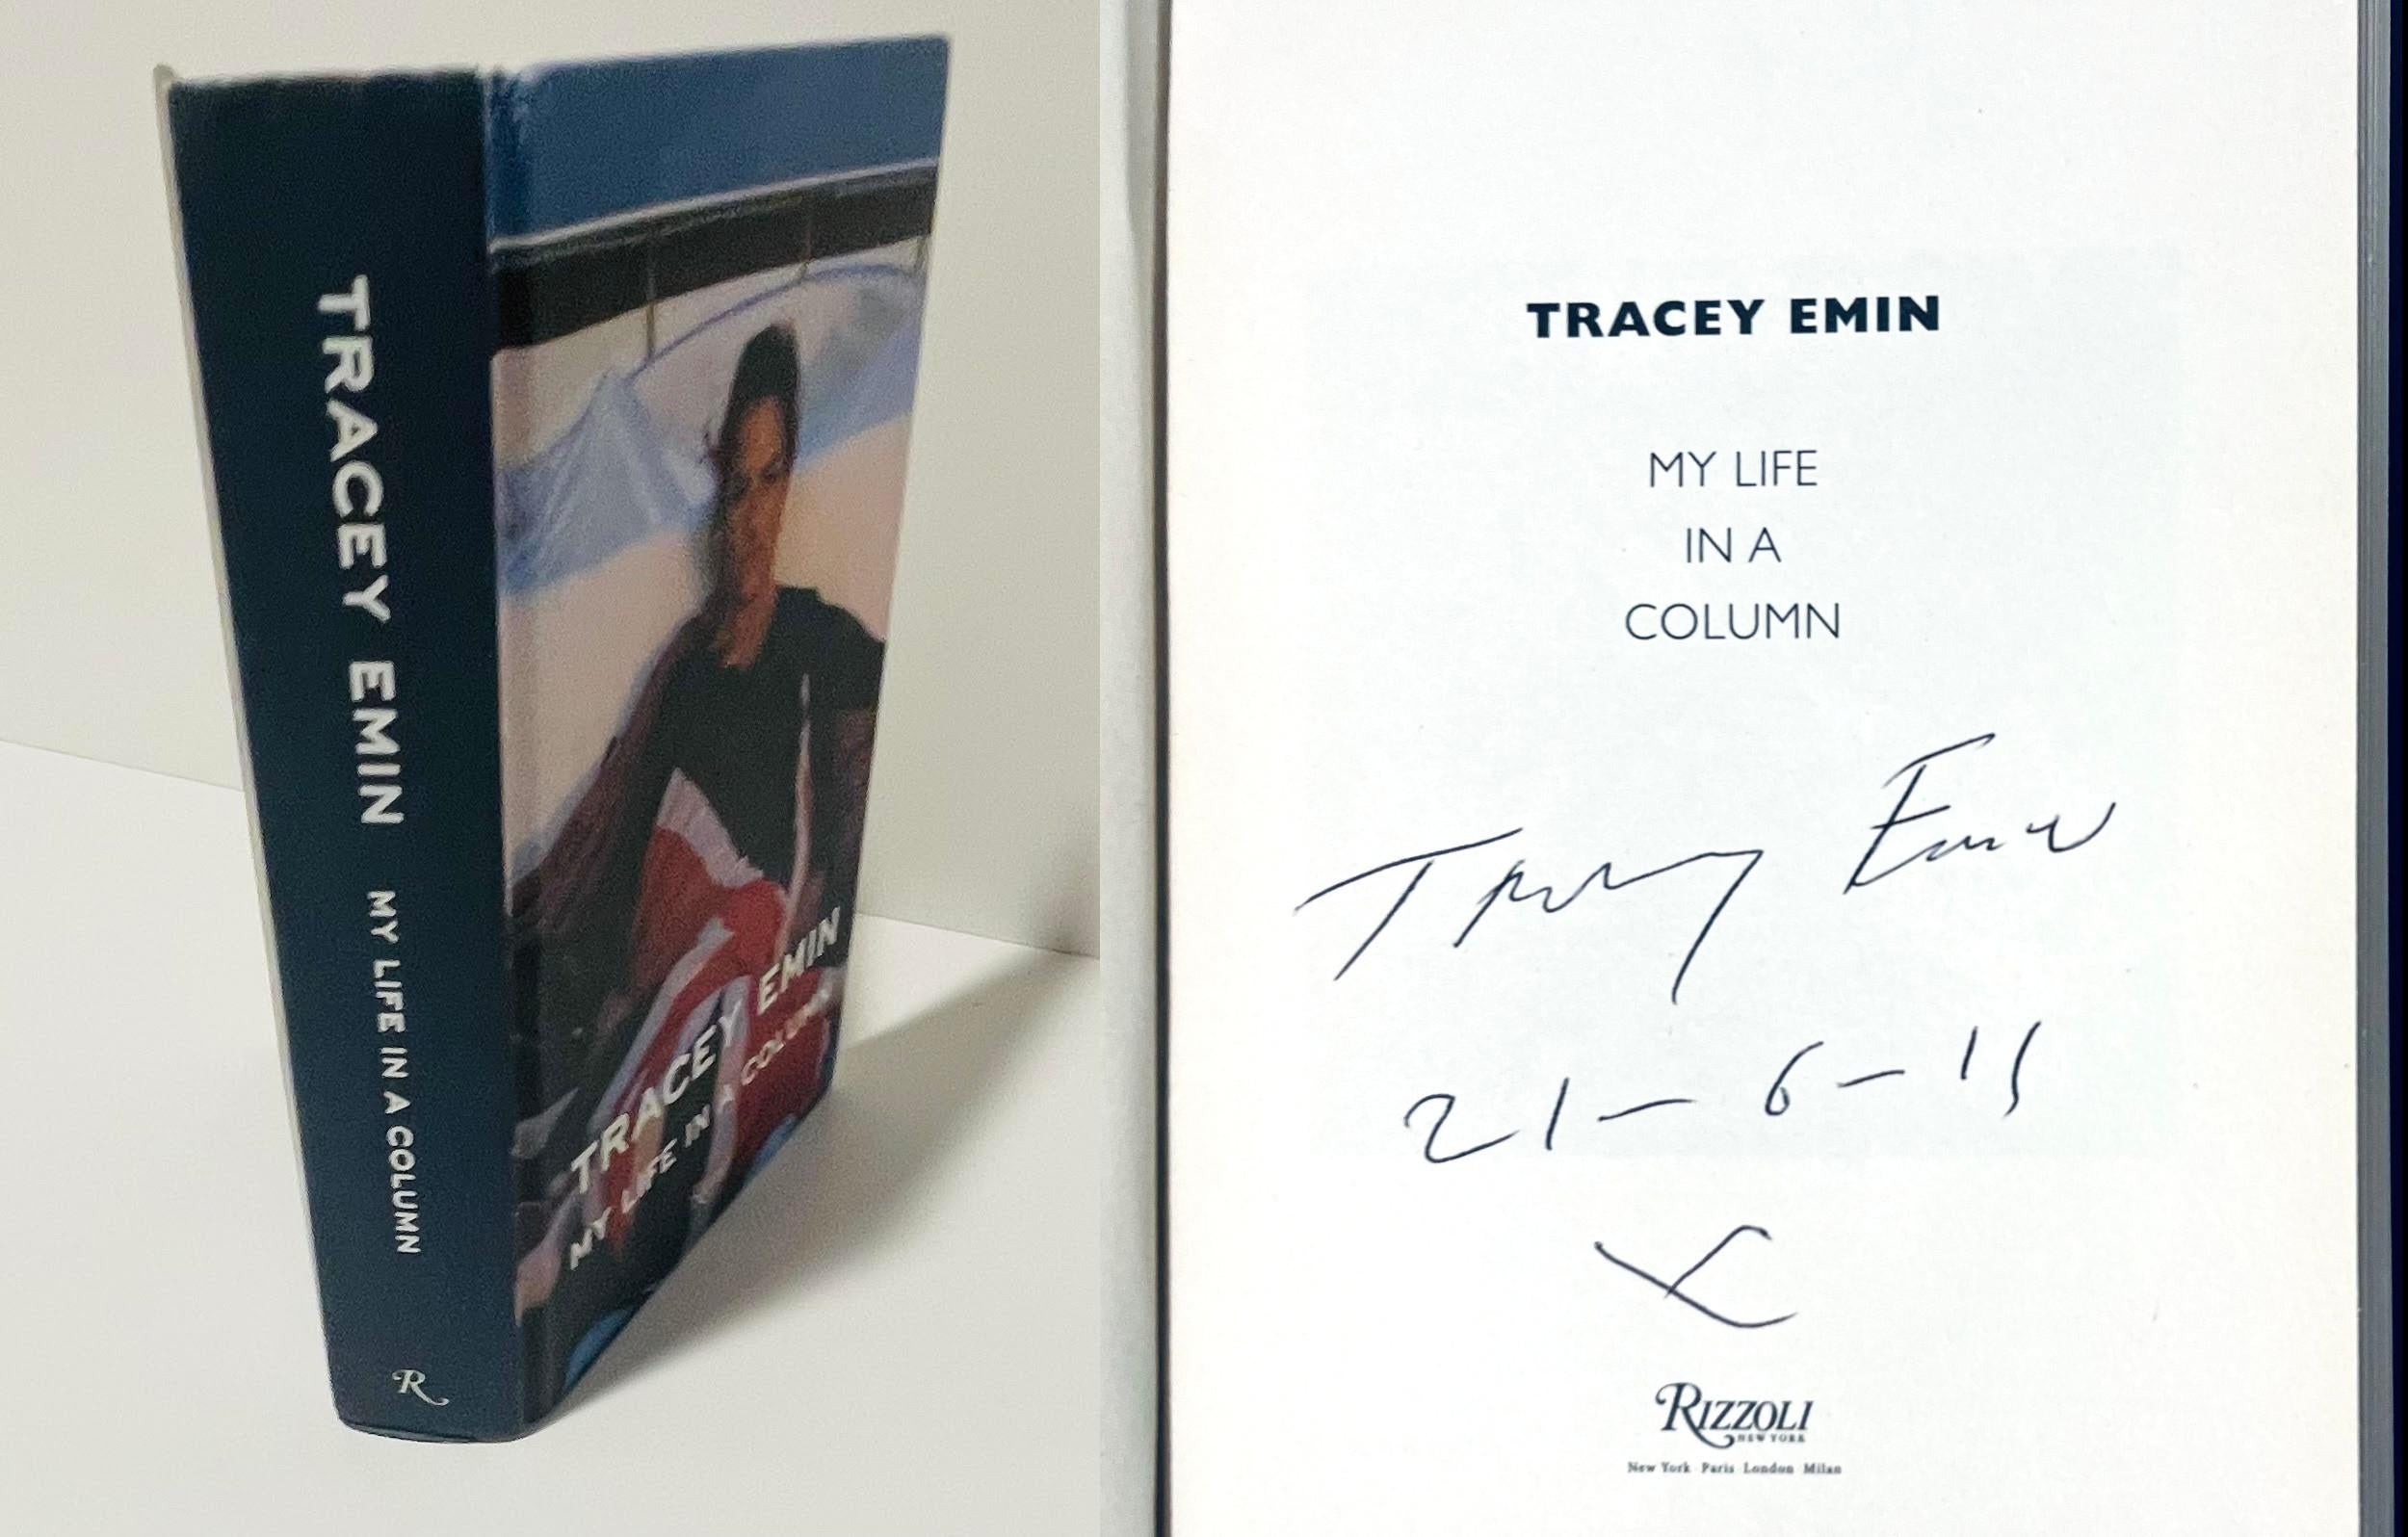 Tracey Emin
My Life in a Column (handsigniert und datiert von Tracey Emin), 2011
Gebundene Monographie mit Schutzumschlag (auf der Titelseite handsigniert und datiert)
handsigniert und datiert 21-6-11 von Tracey Emin auf dem Titelblatt
8 1/2 × 5 1/4